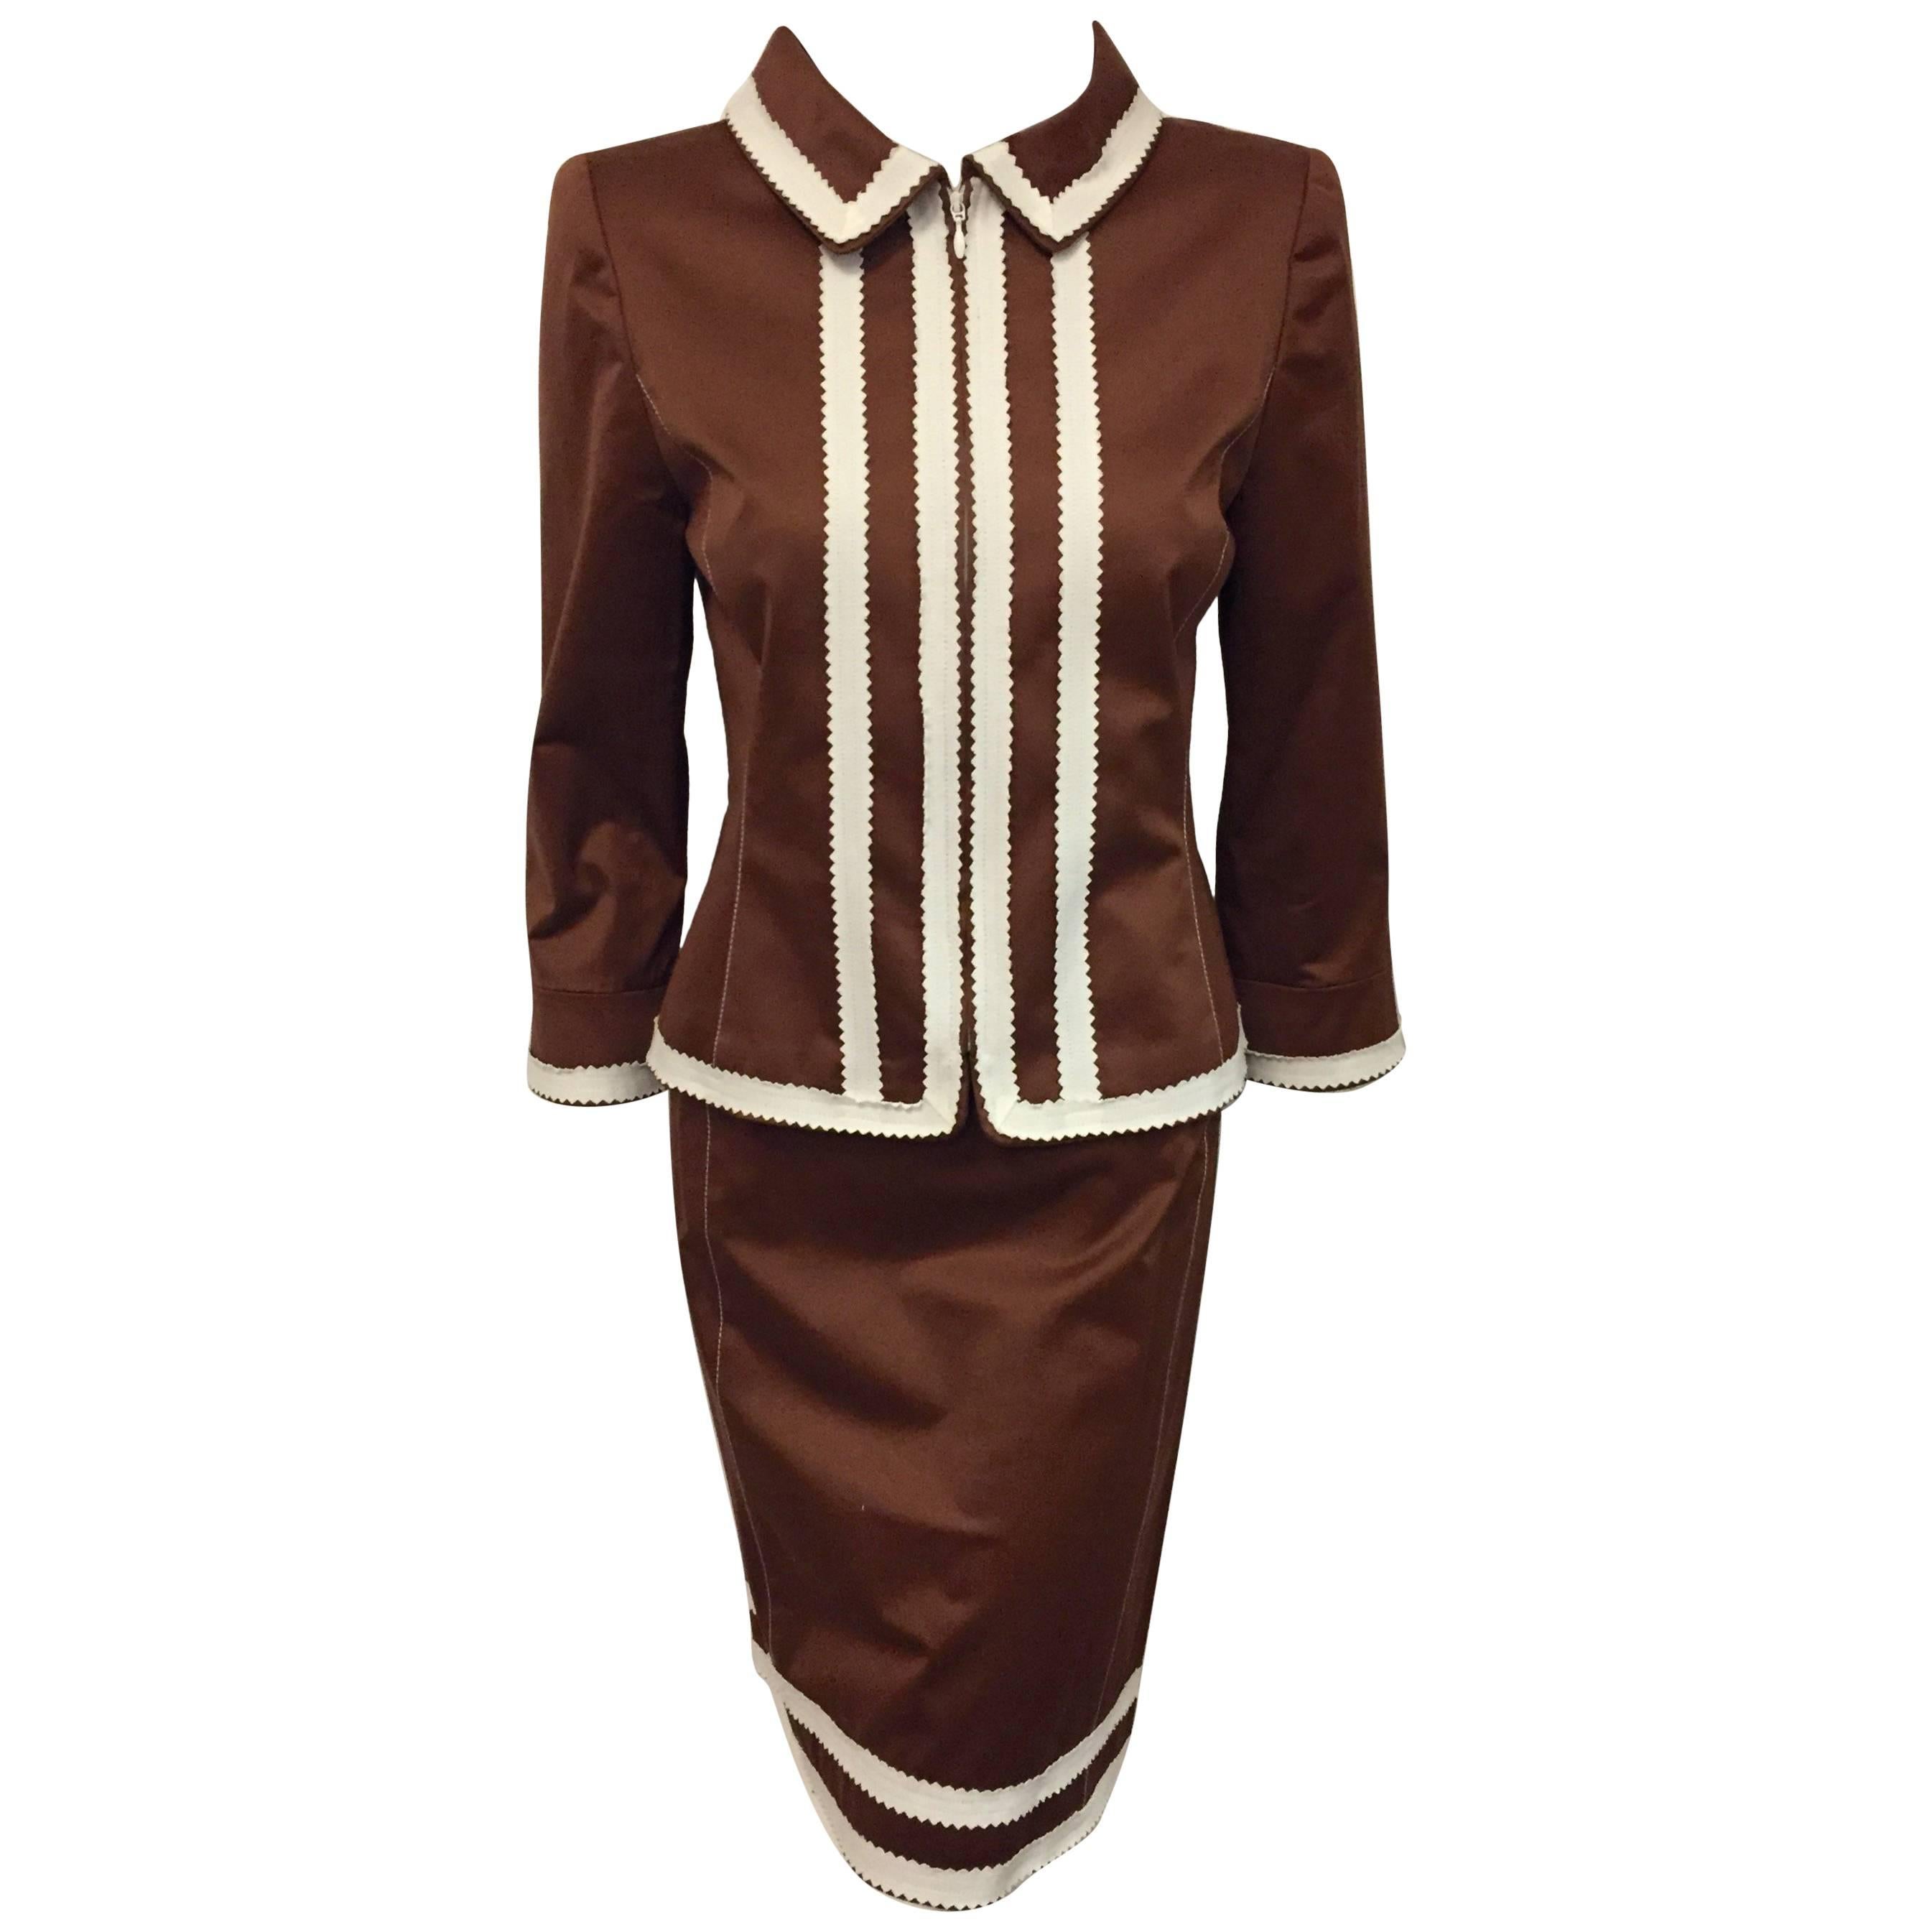   Oscar de la Renta Copper Color Cotton Skirt Suit with White Trim